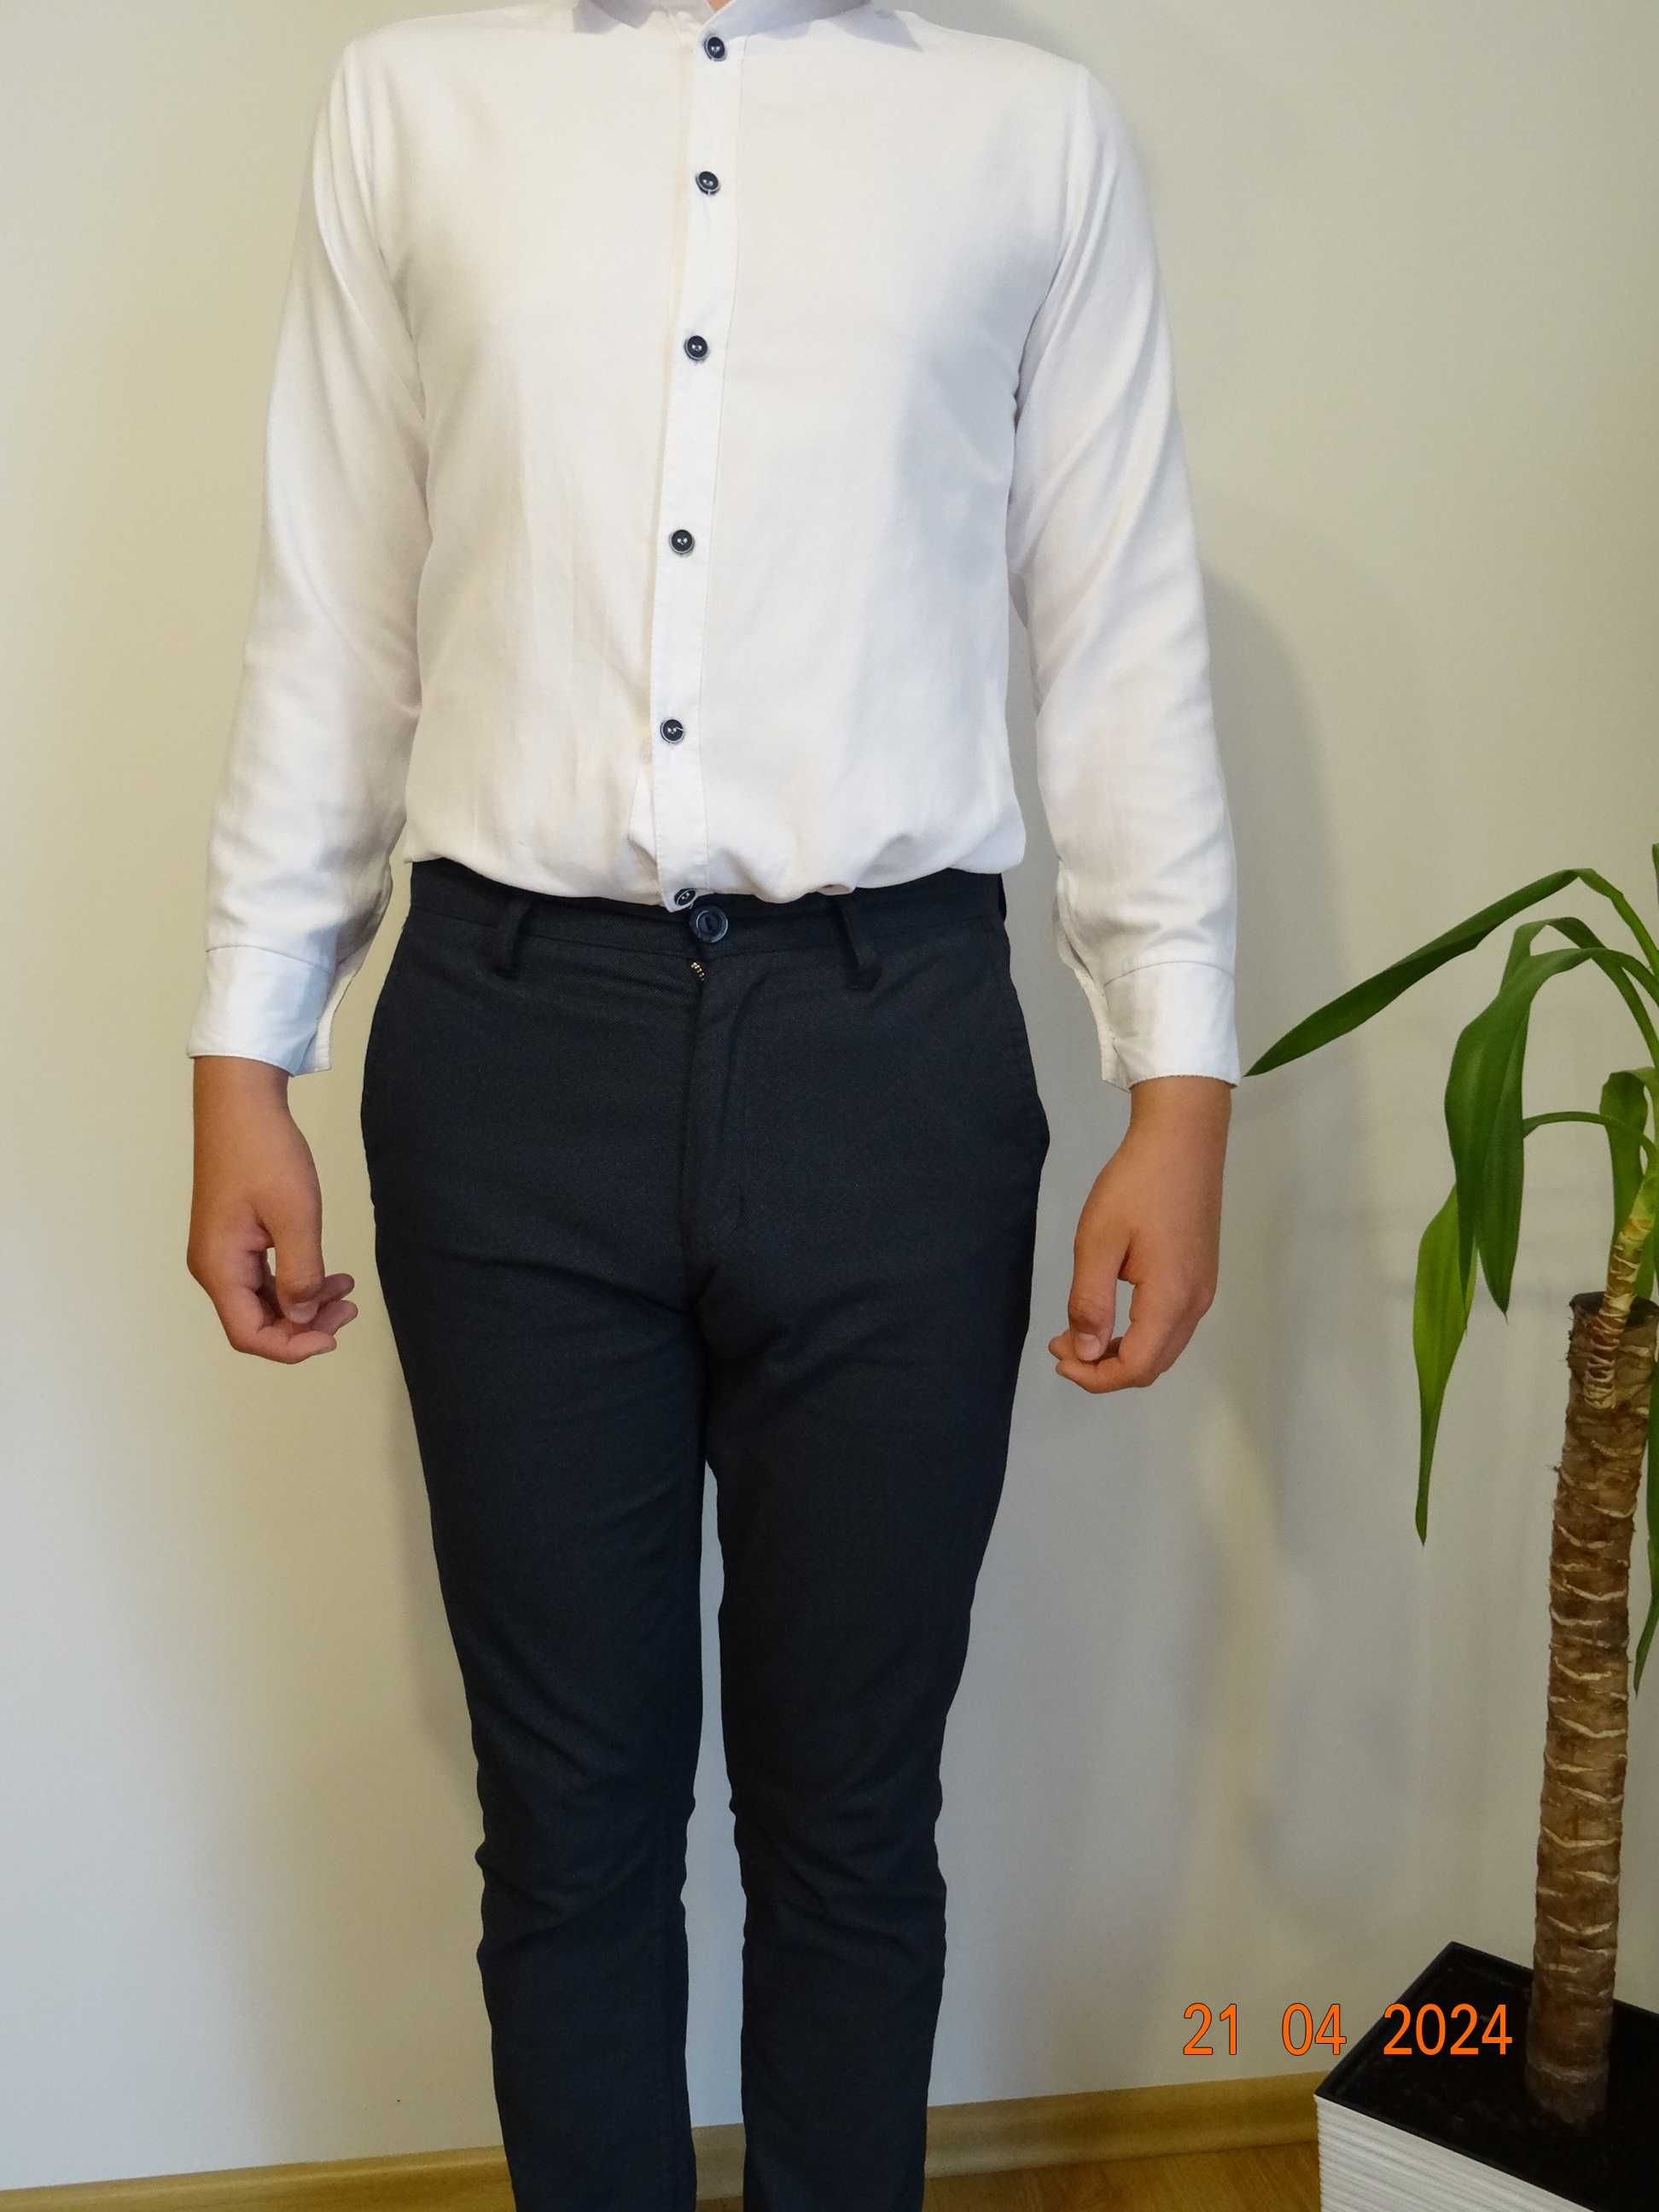 Eleganckie męskie spodnie  młodzieżowe wraz z biała koszulą.